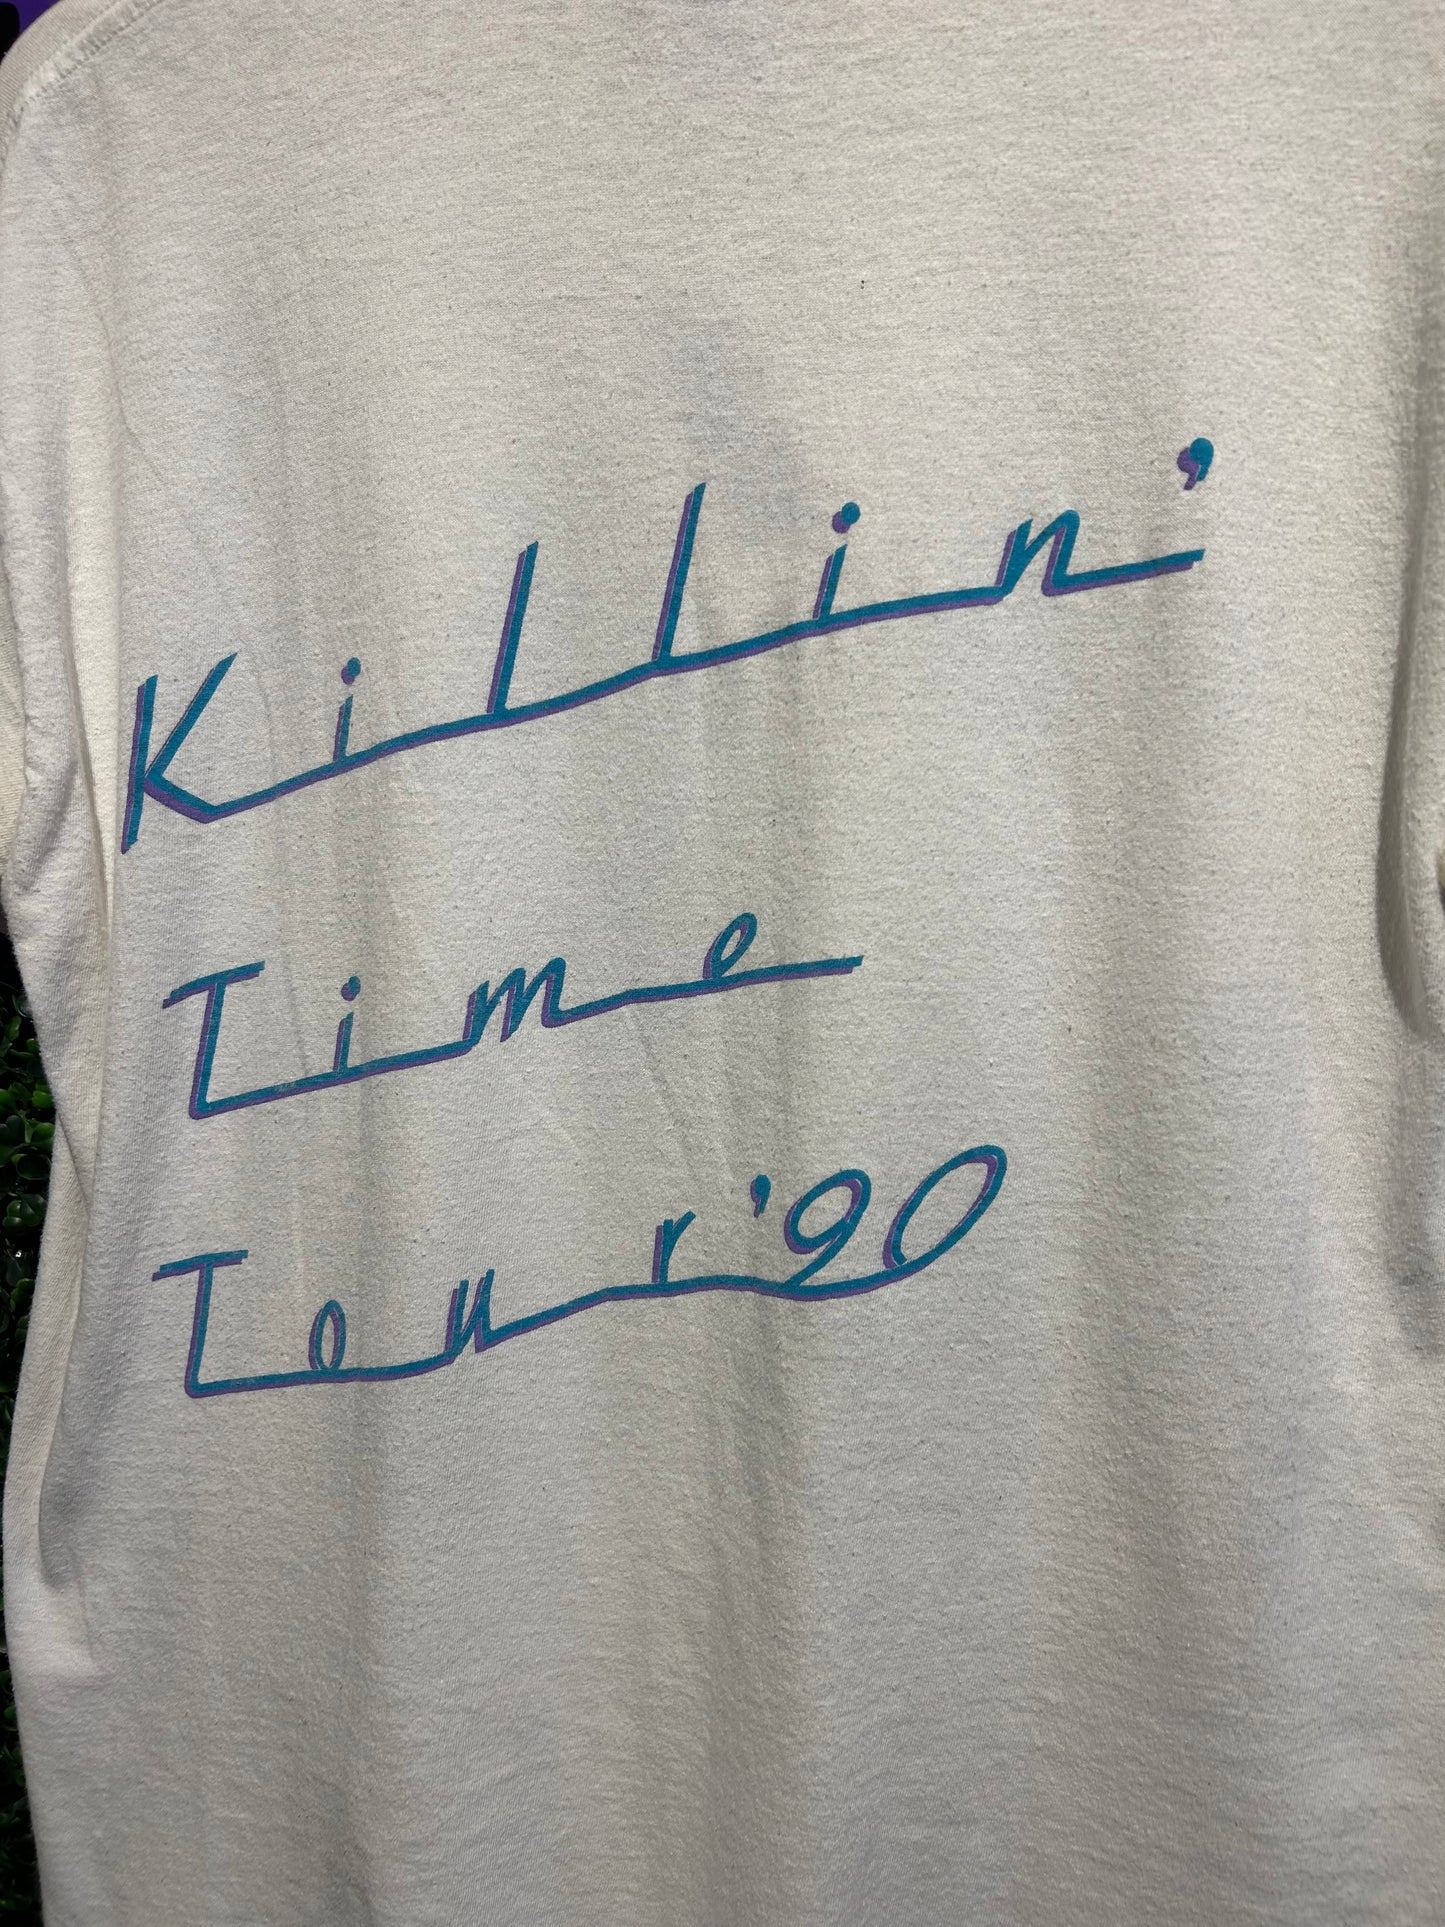 1990 Clint Black Killin Time Tour T-Shirt. Size M/L